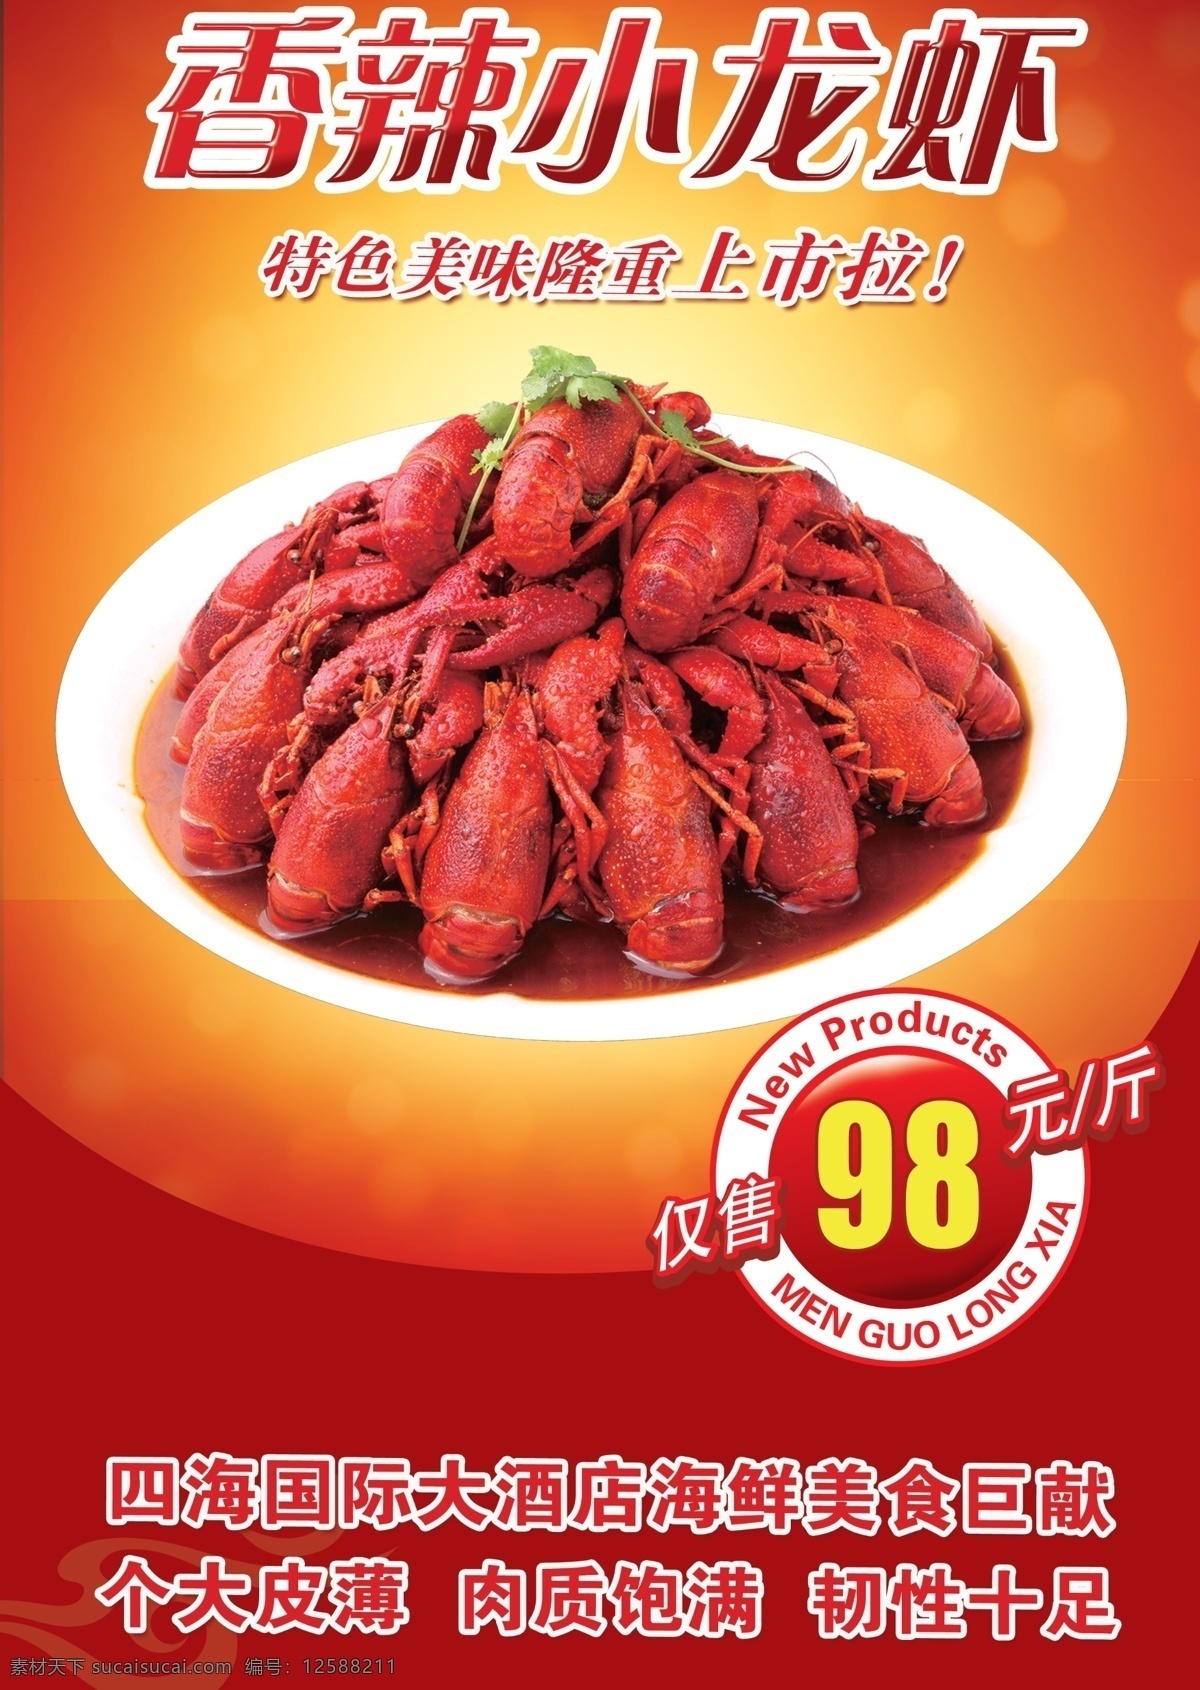 香辣小龙虾 小龙虾 美食 传统美食 美味小烧 美味小龙虾 画册 海报 单张dm设计